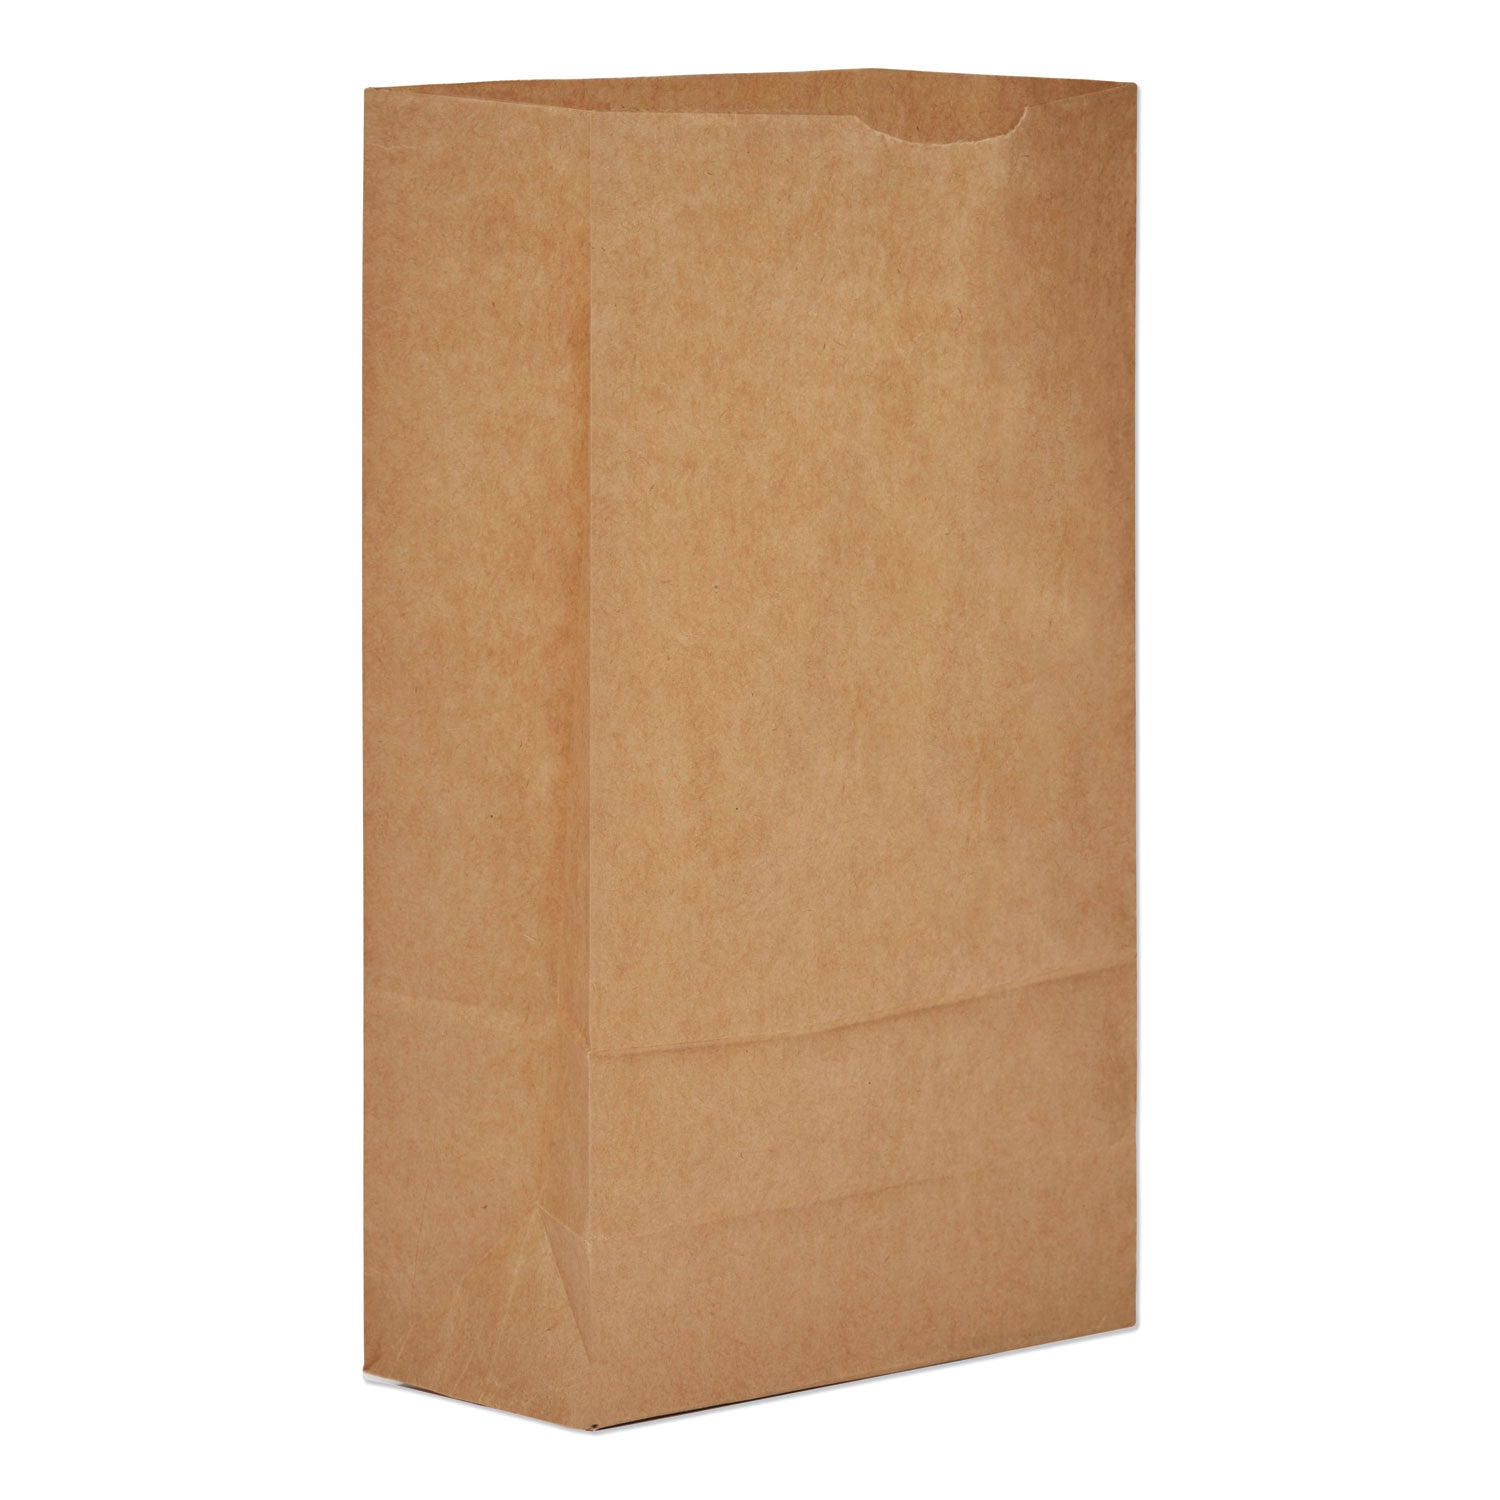 grocery-paper-bags-50-lb-capacity-#6-6-x-363-x-1106-kraft-500-bags_baggx6500 - 1